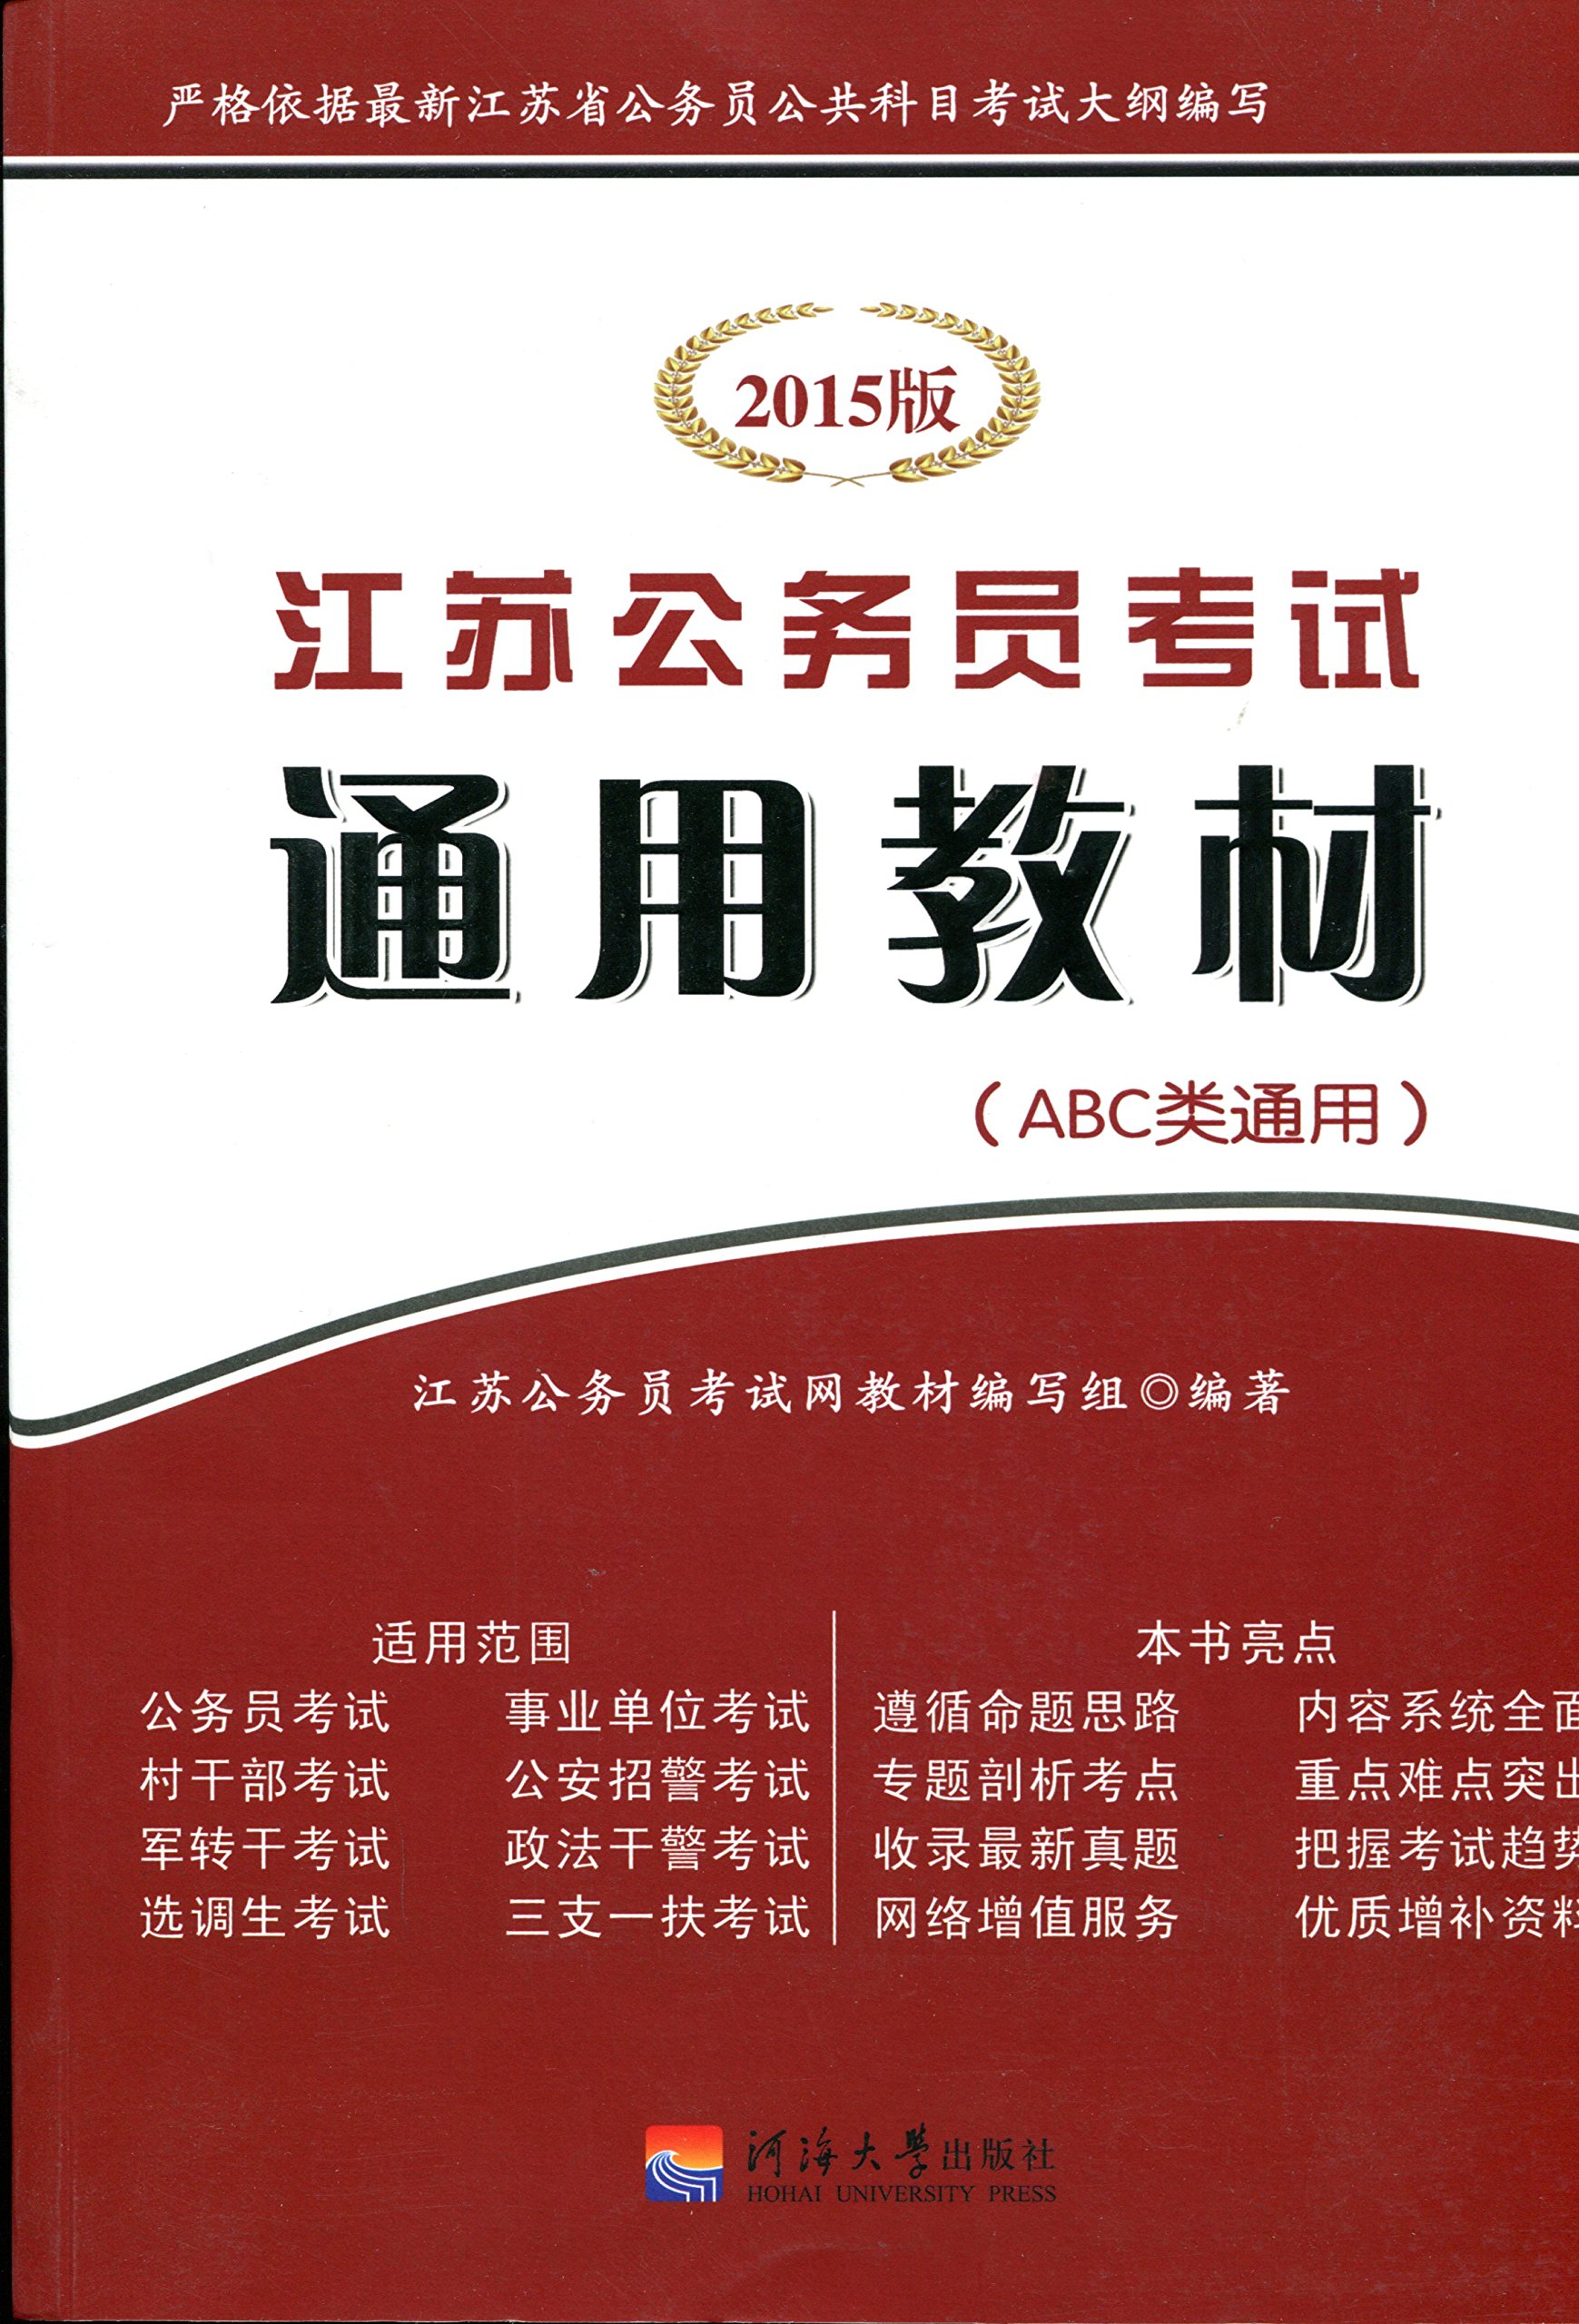 【正版二手】2015版江苏公务员考试通用教材 ABC类通用